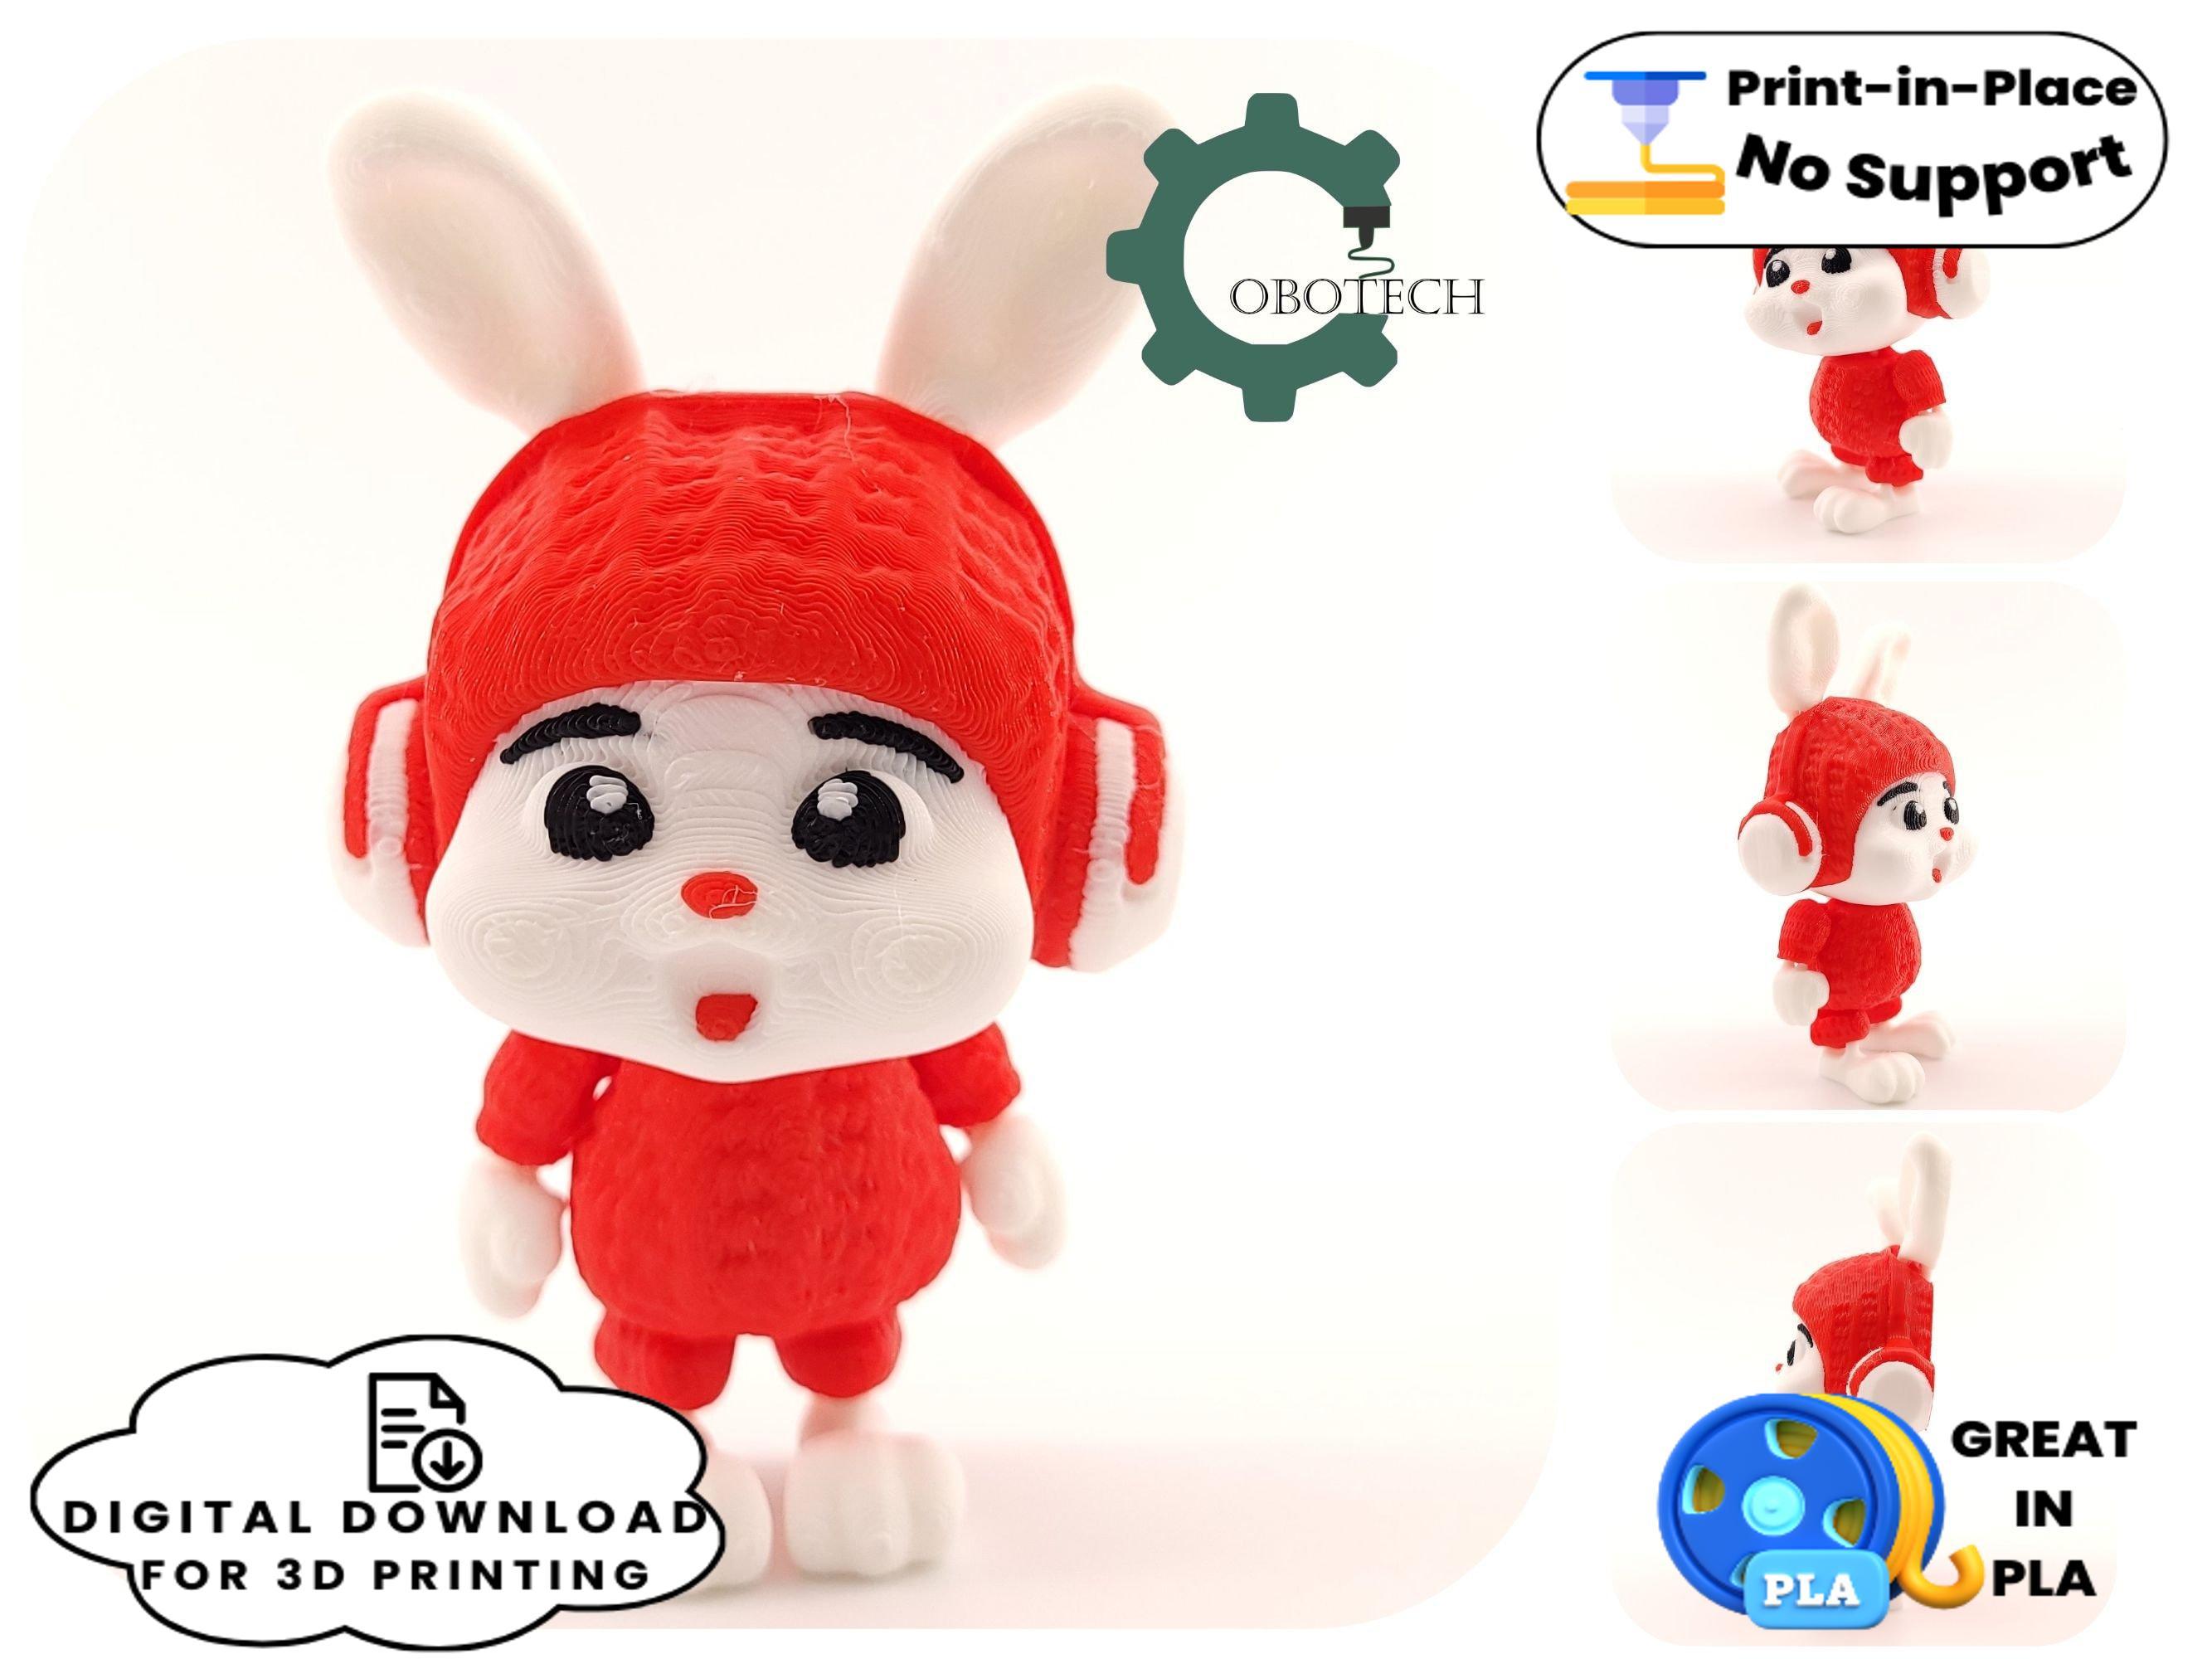 Cobotech Articulated Crochet Headphone Bunny 3d model